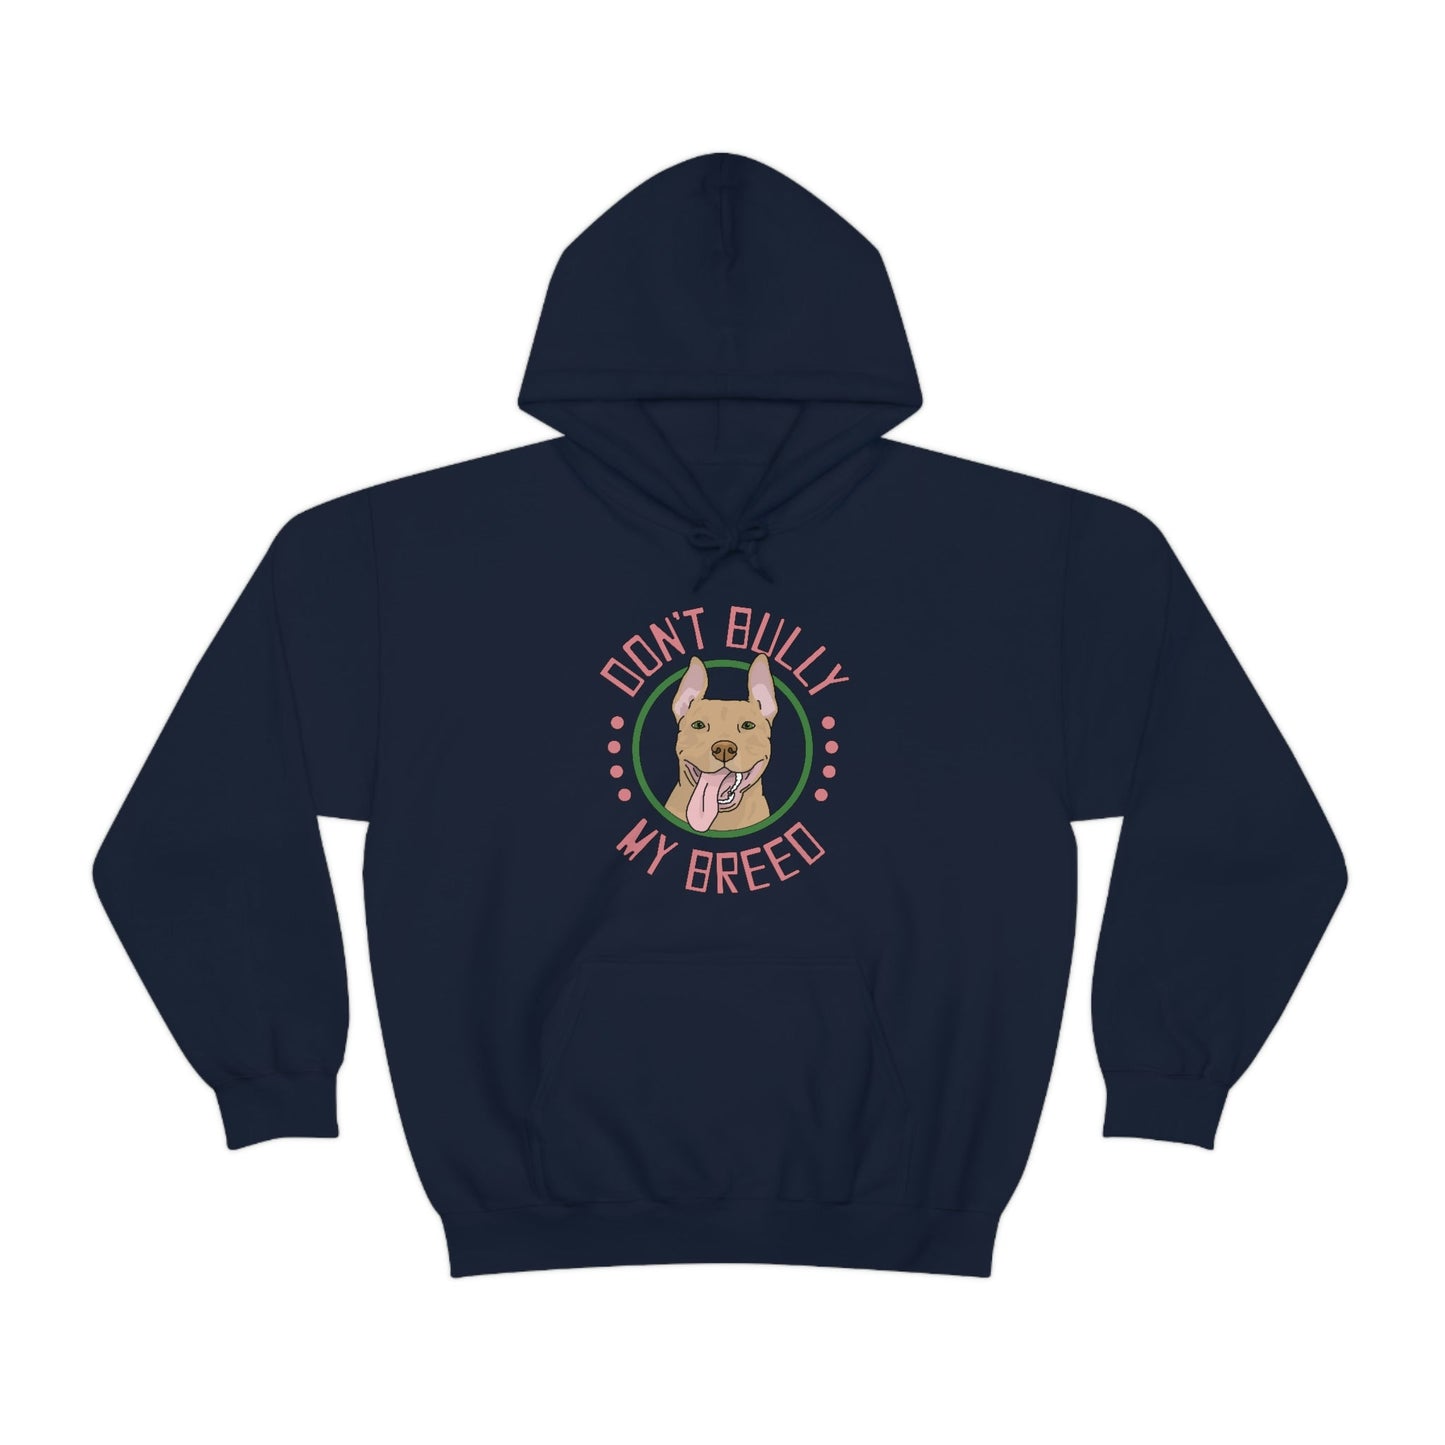 Don't Bully My Breed - Bunny Ears | Hooded Sweatshirt - Detezi Designs-59684462707519435174